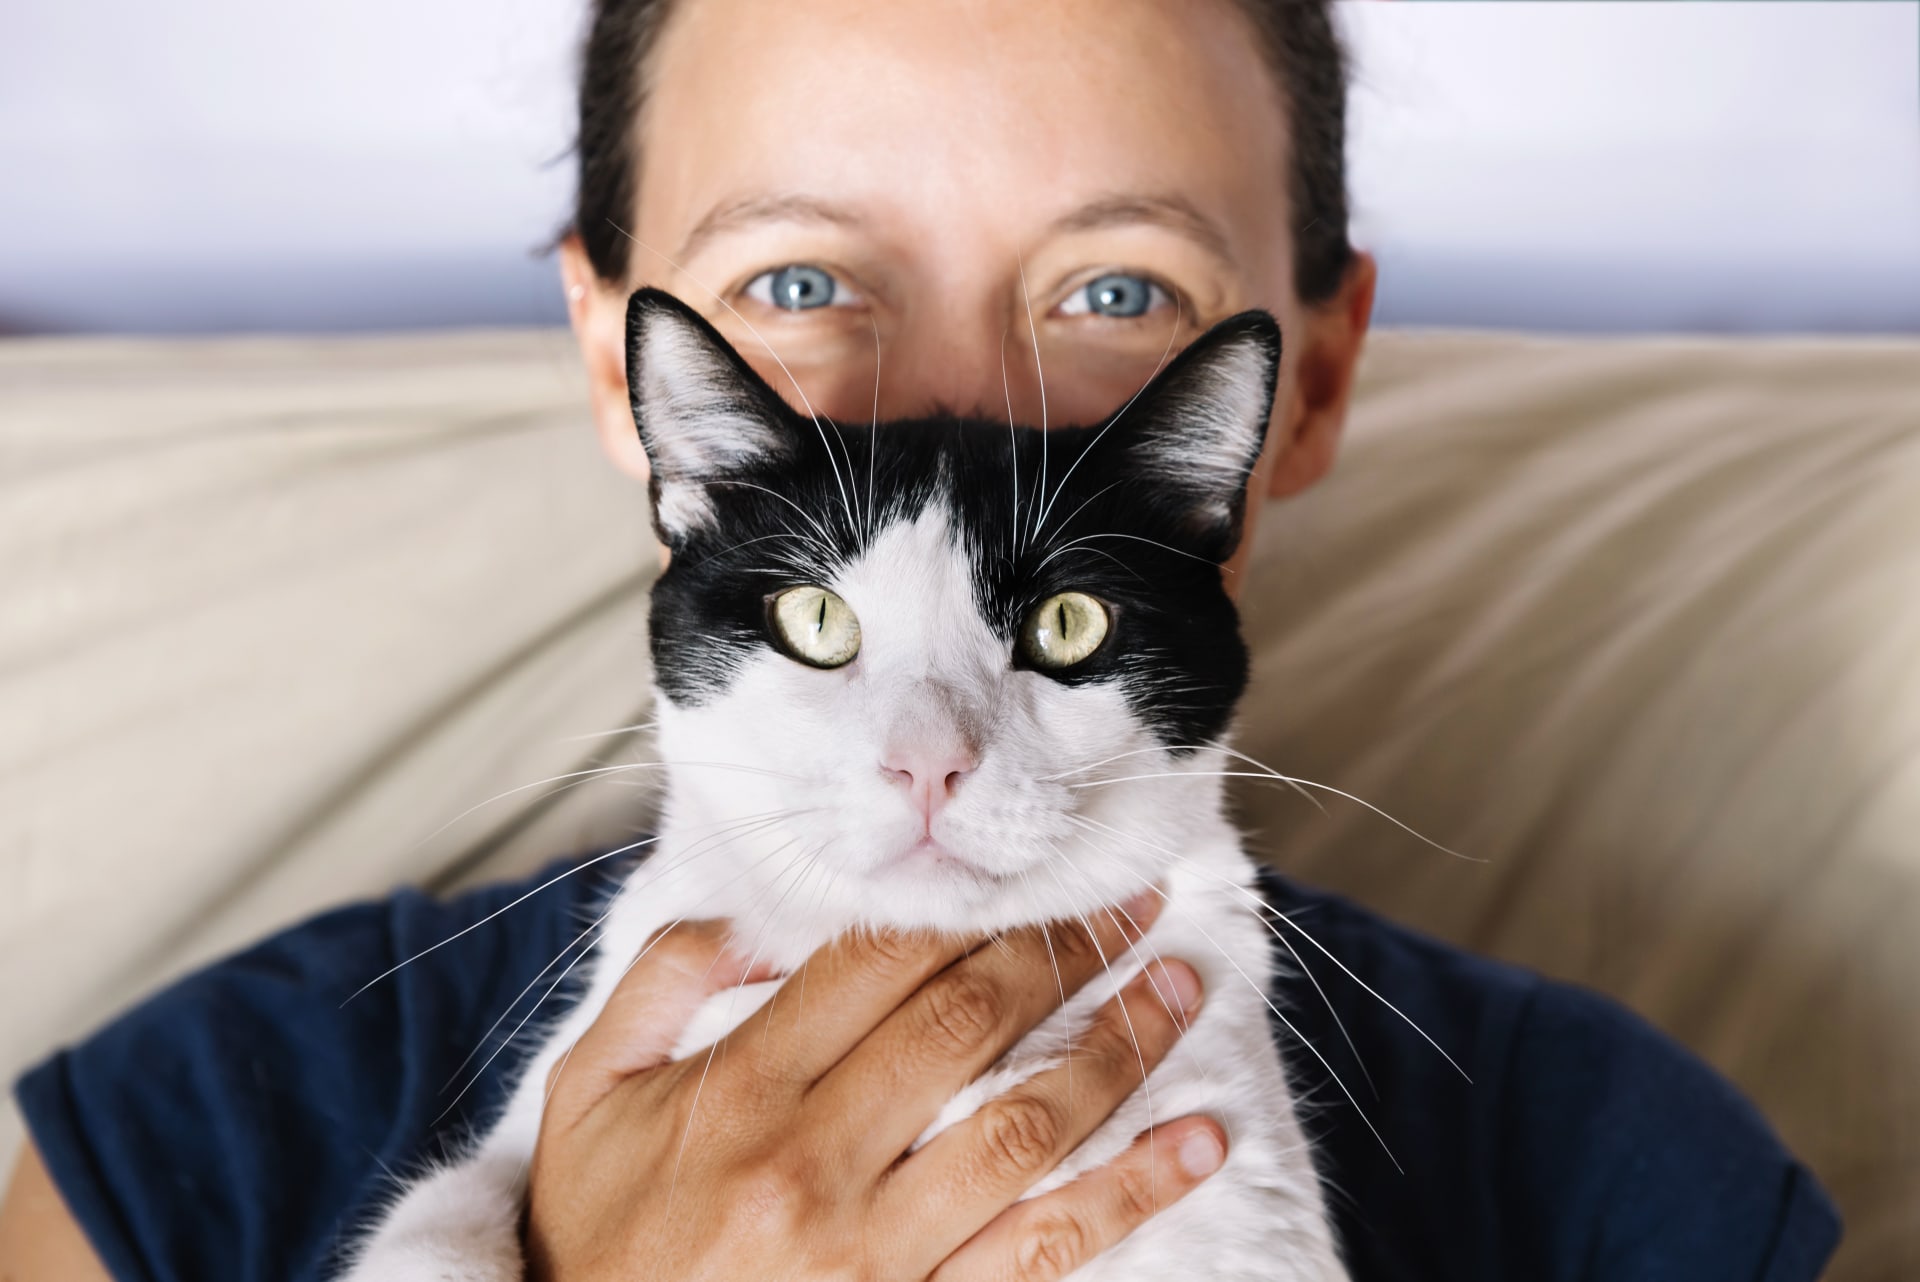 Jaké jsou předsudky lidí vůči majitelům koček?